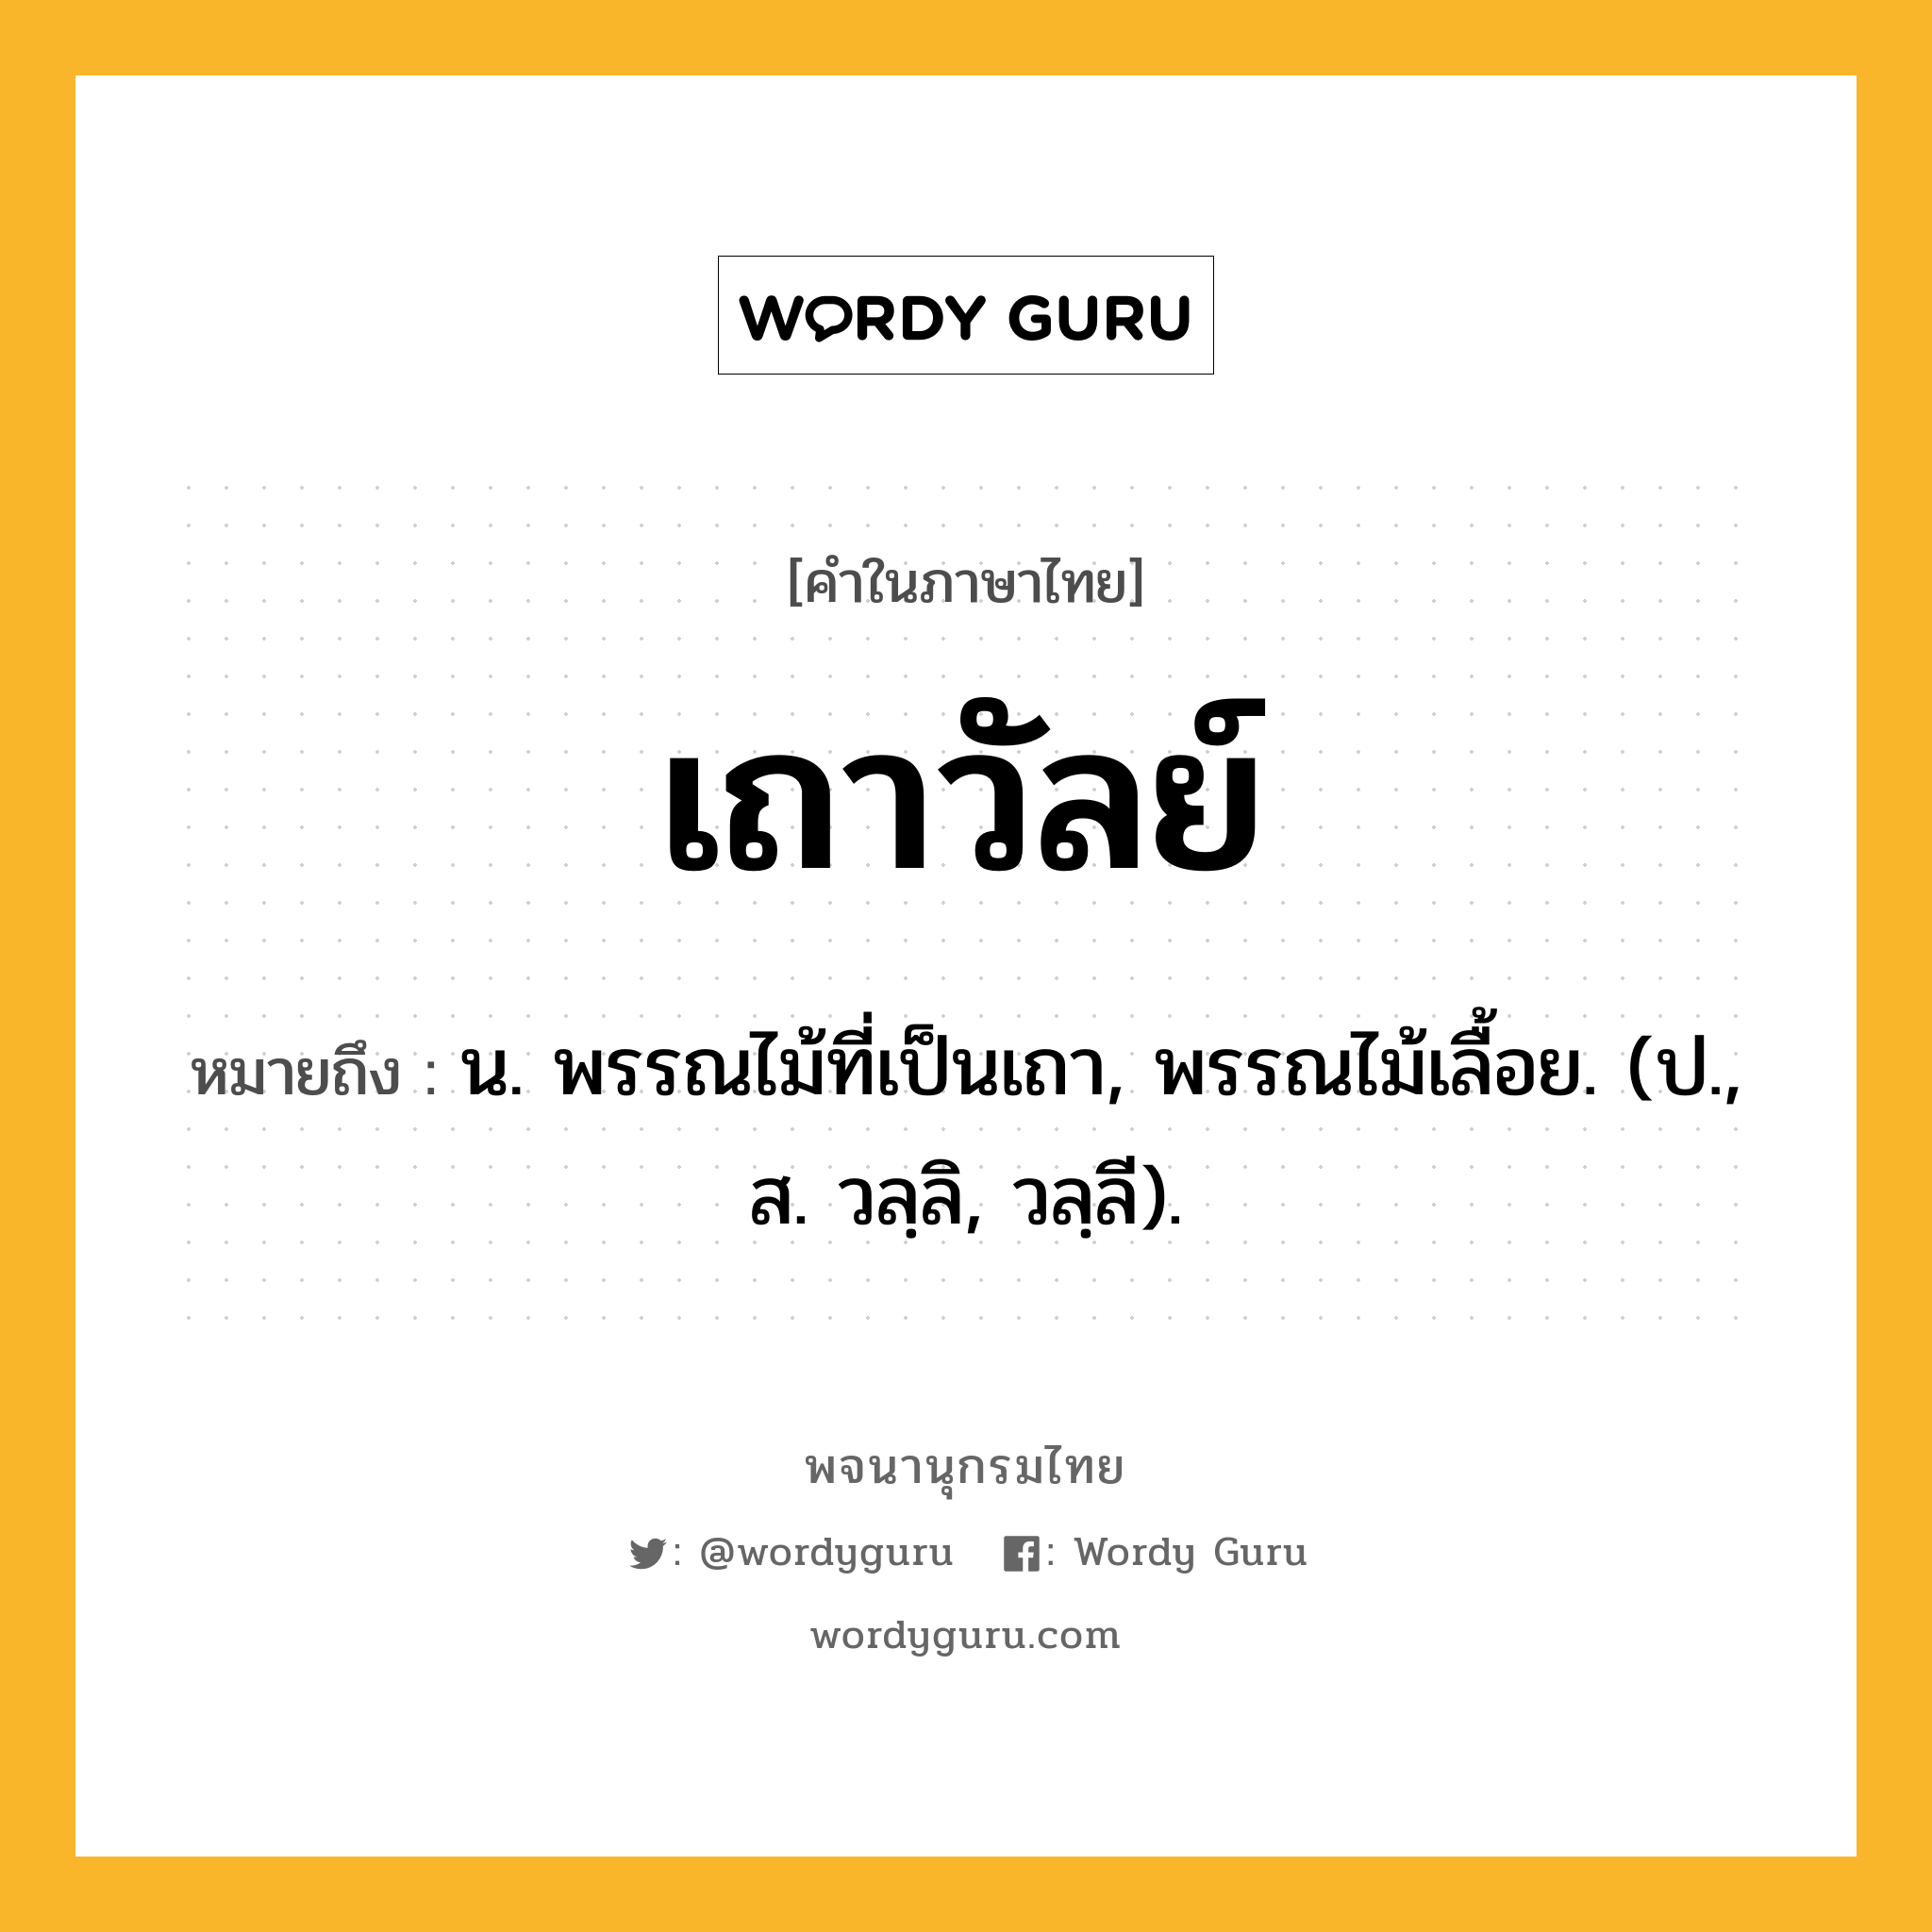 เถาวัลย์ หมายถึงอะไร?, คำในภาษาไทย เถาวัลย์ หมายถึง น. พรรณไม้ที่เป็นเถา, พรรณไม้เลื้อย. (ป., ส. วลฺลิ, วลฺลี).